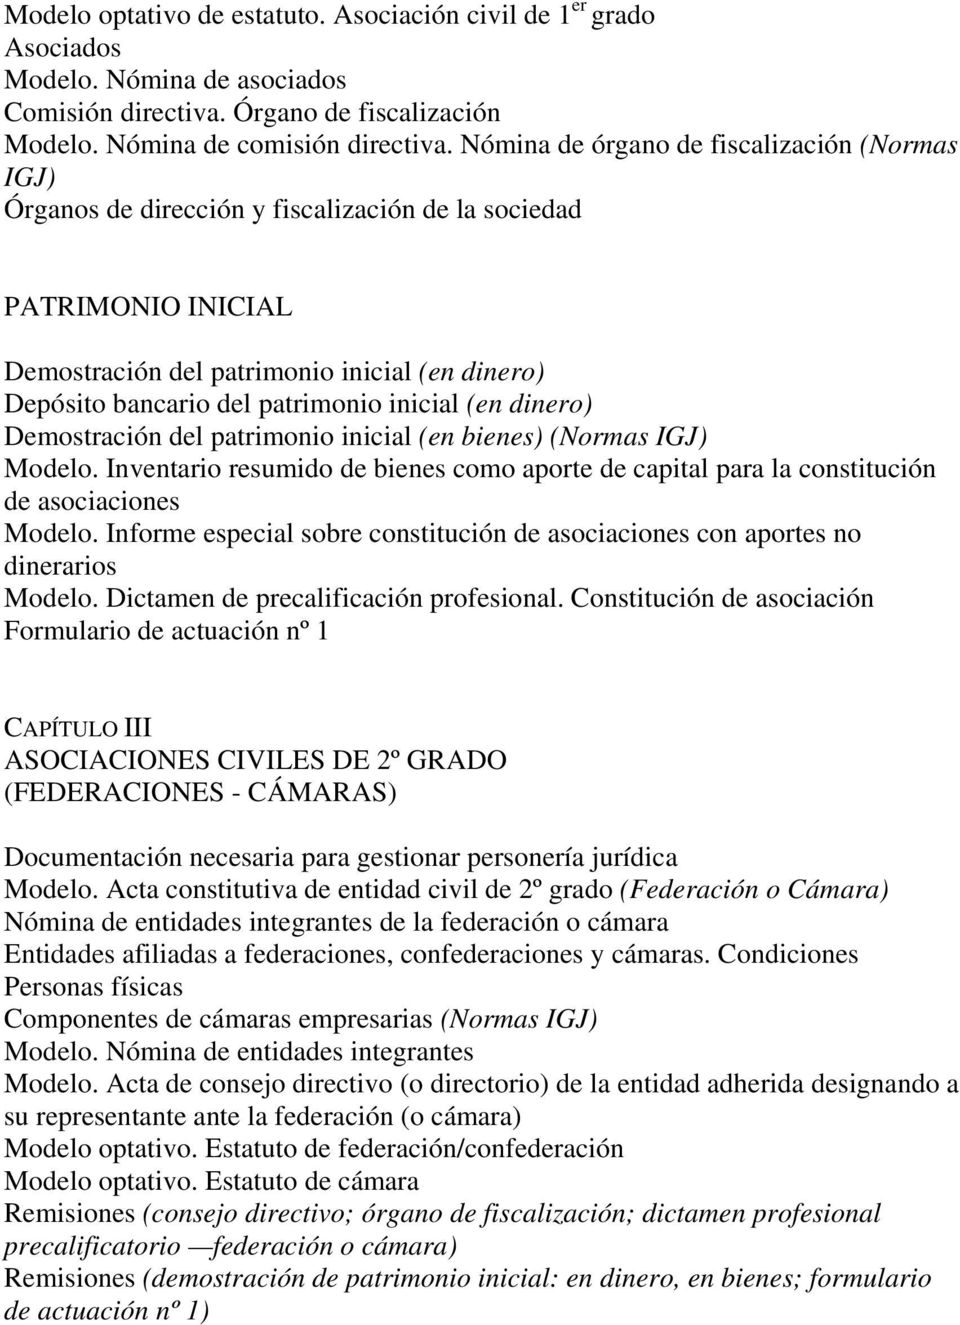 PRESENTACIONES ANTE LA INSPECCIÓN GENERAL DE JUSTICIA - PDF Descargar libre